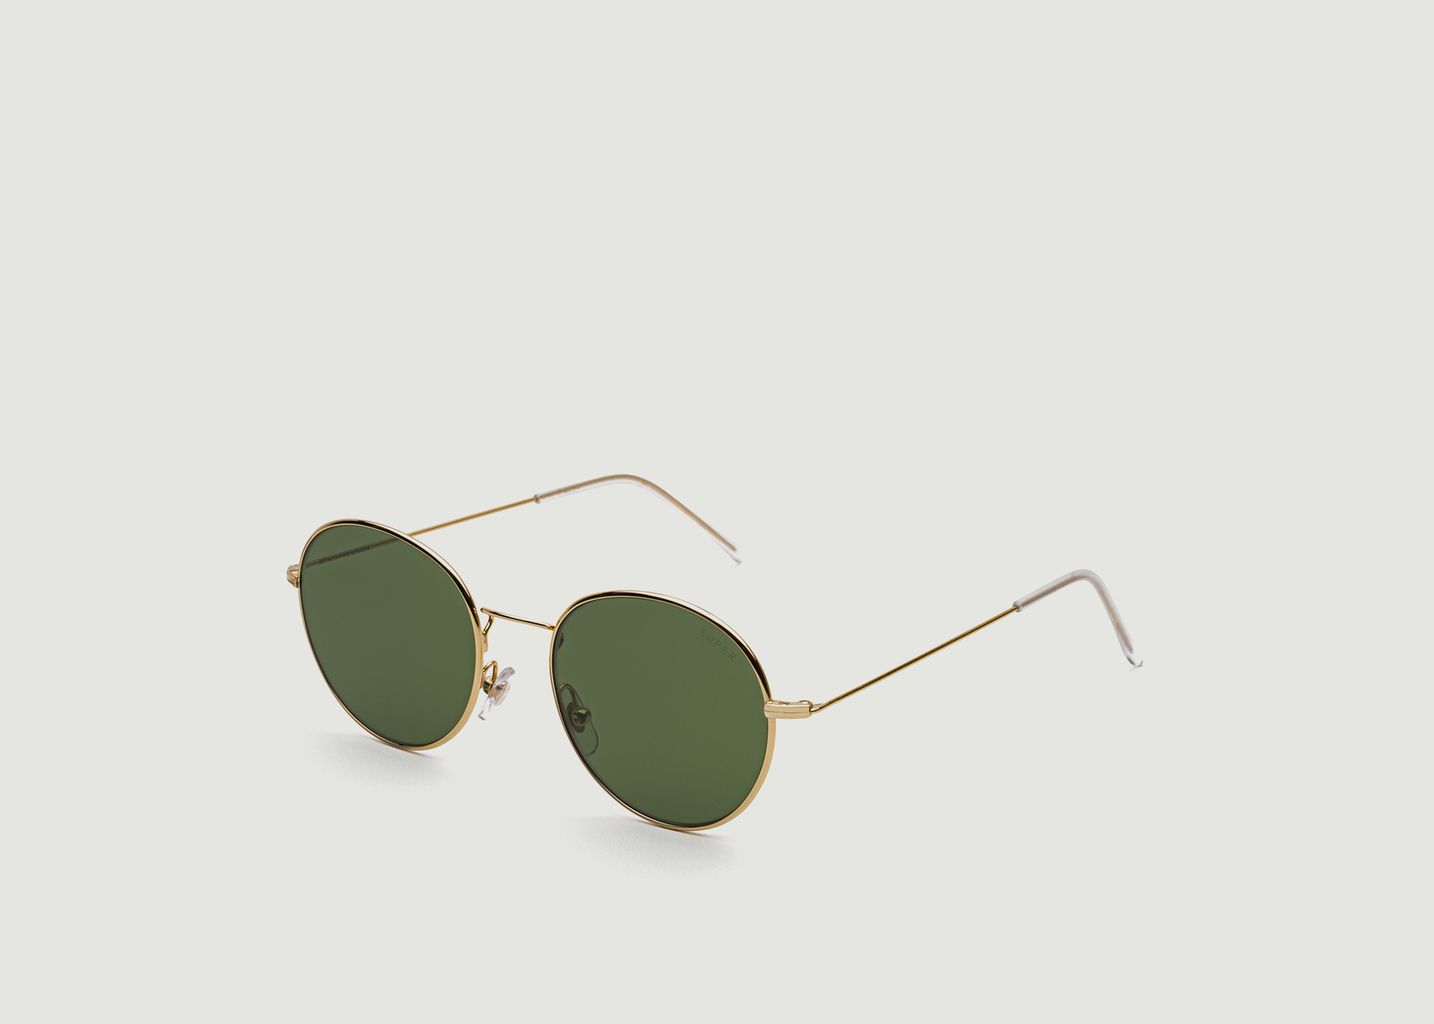 Retrosuperfuture Wire Green Sunglasses